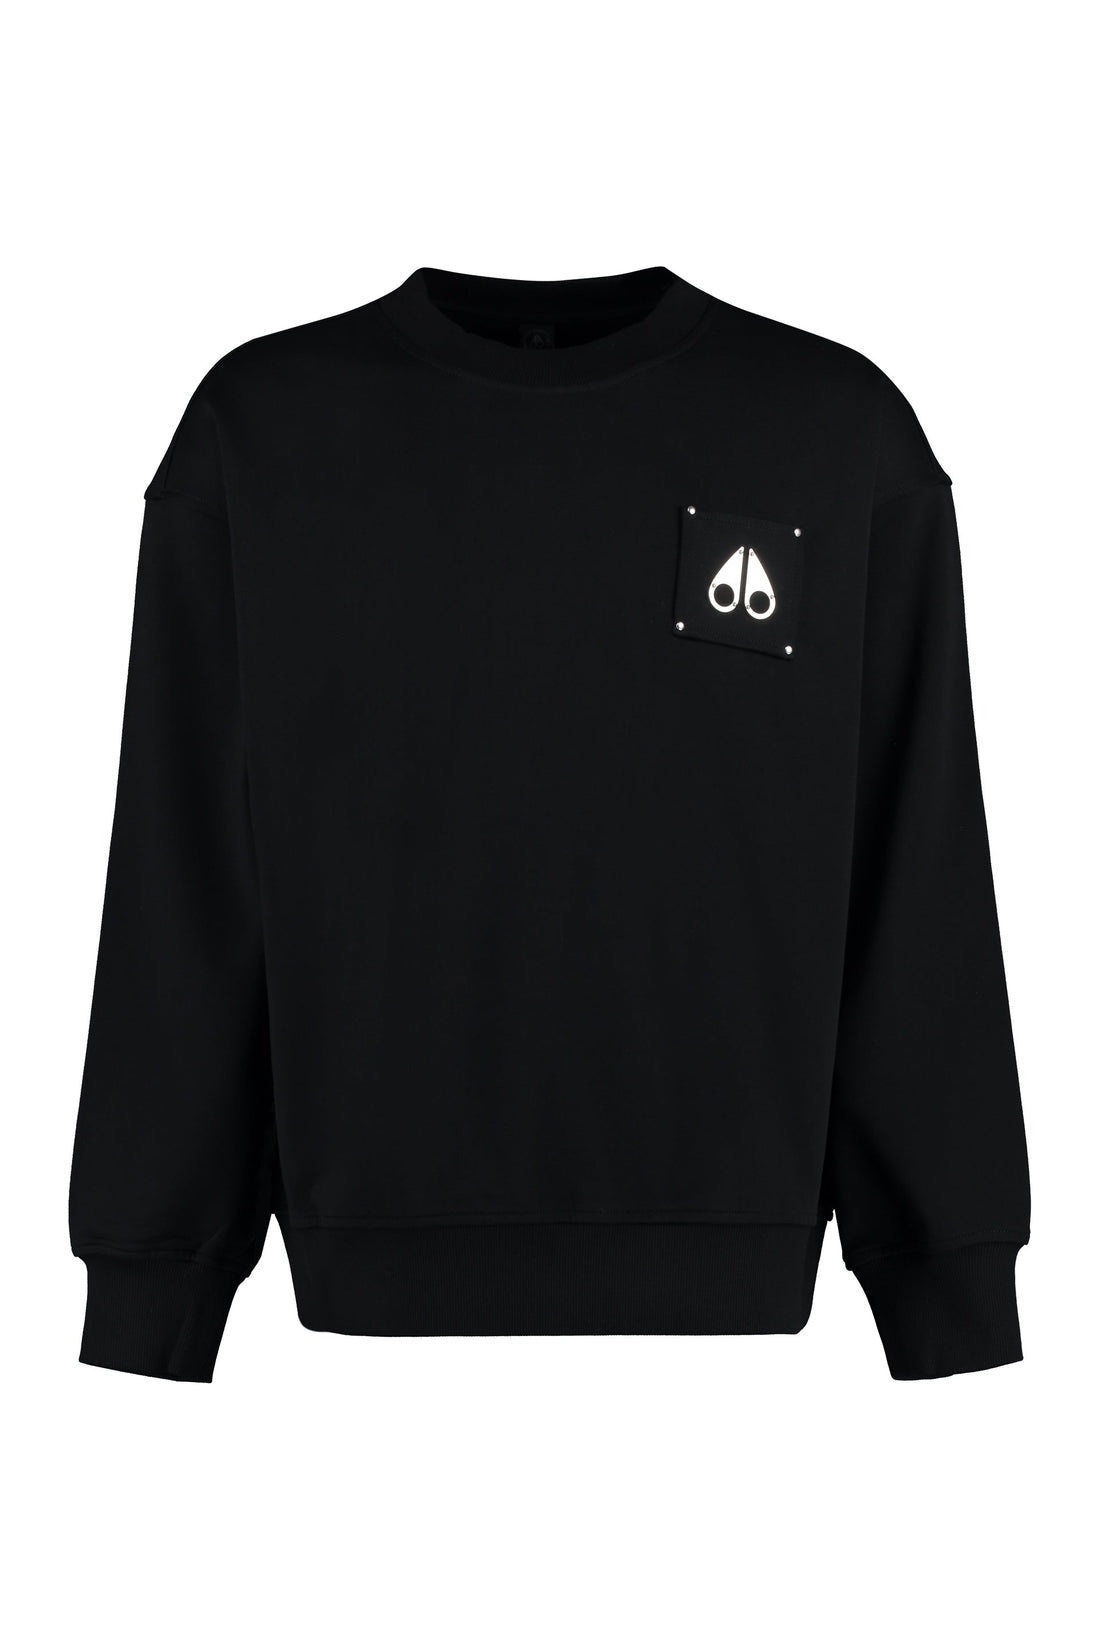 Moose Knuckles-OUTLET-SALE-Cotton sweatshirt-ARCHIVIST